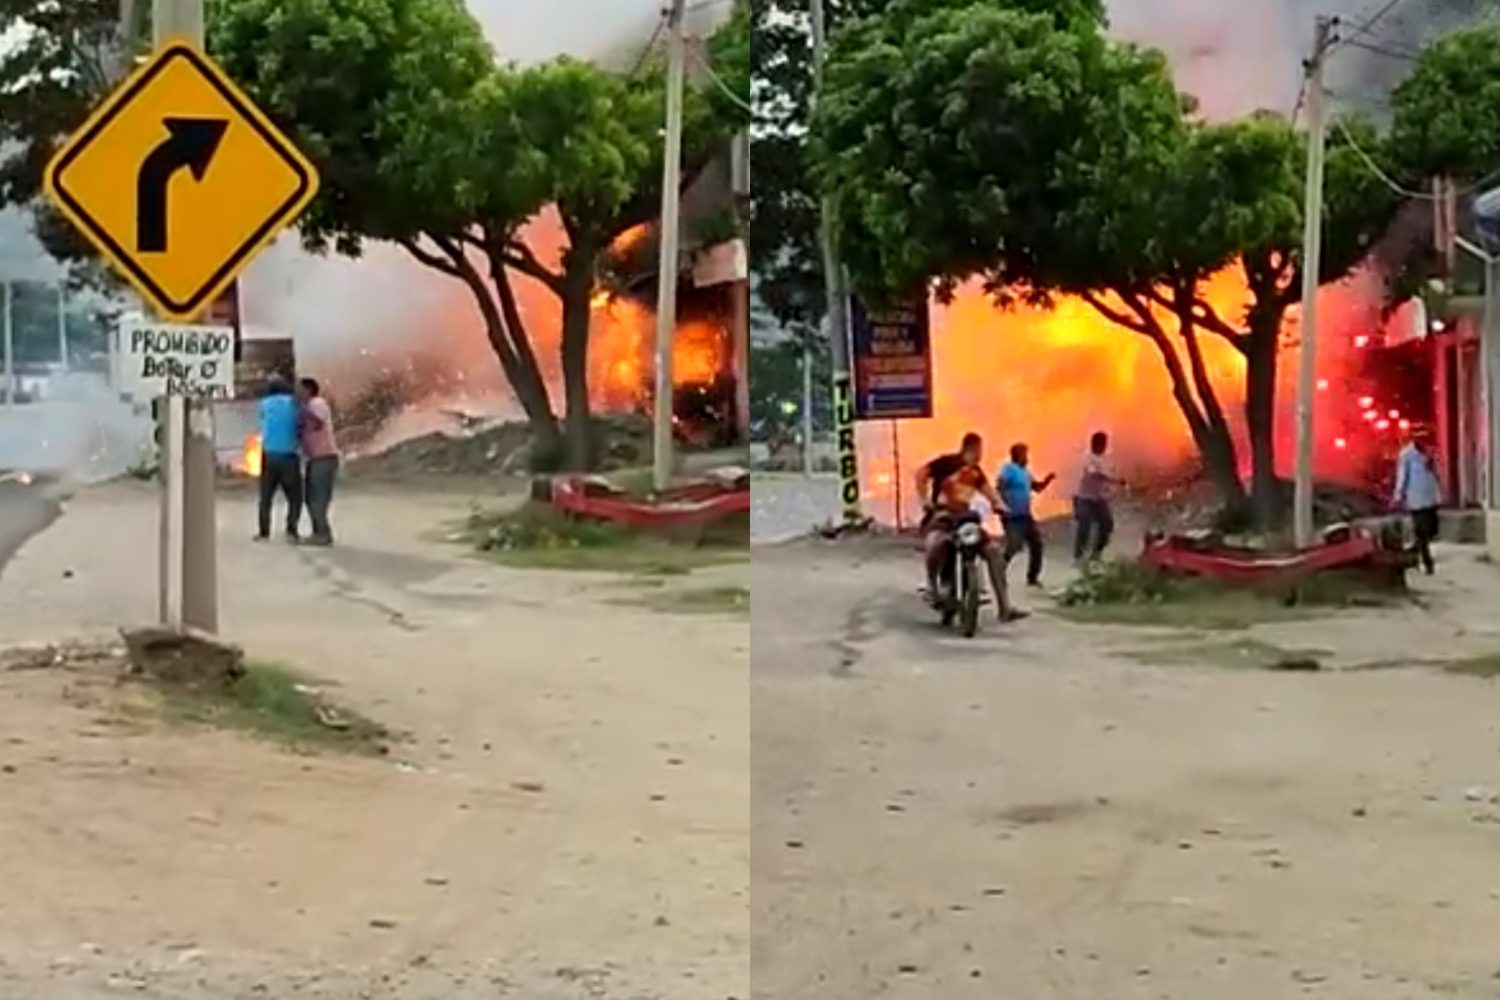 Fuerte explosión en polvorería de Santa Marta deja 2 personas sin vida